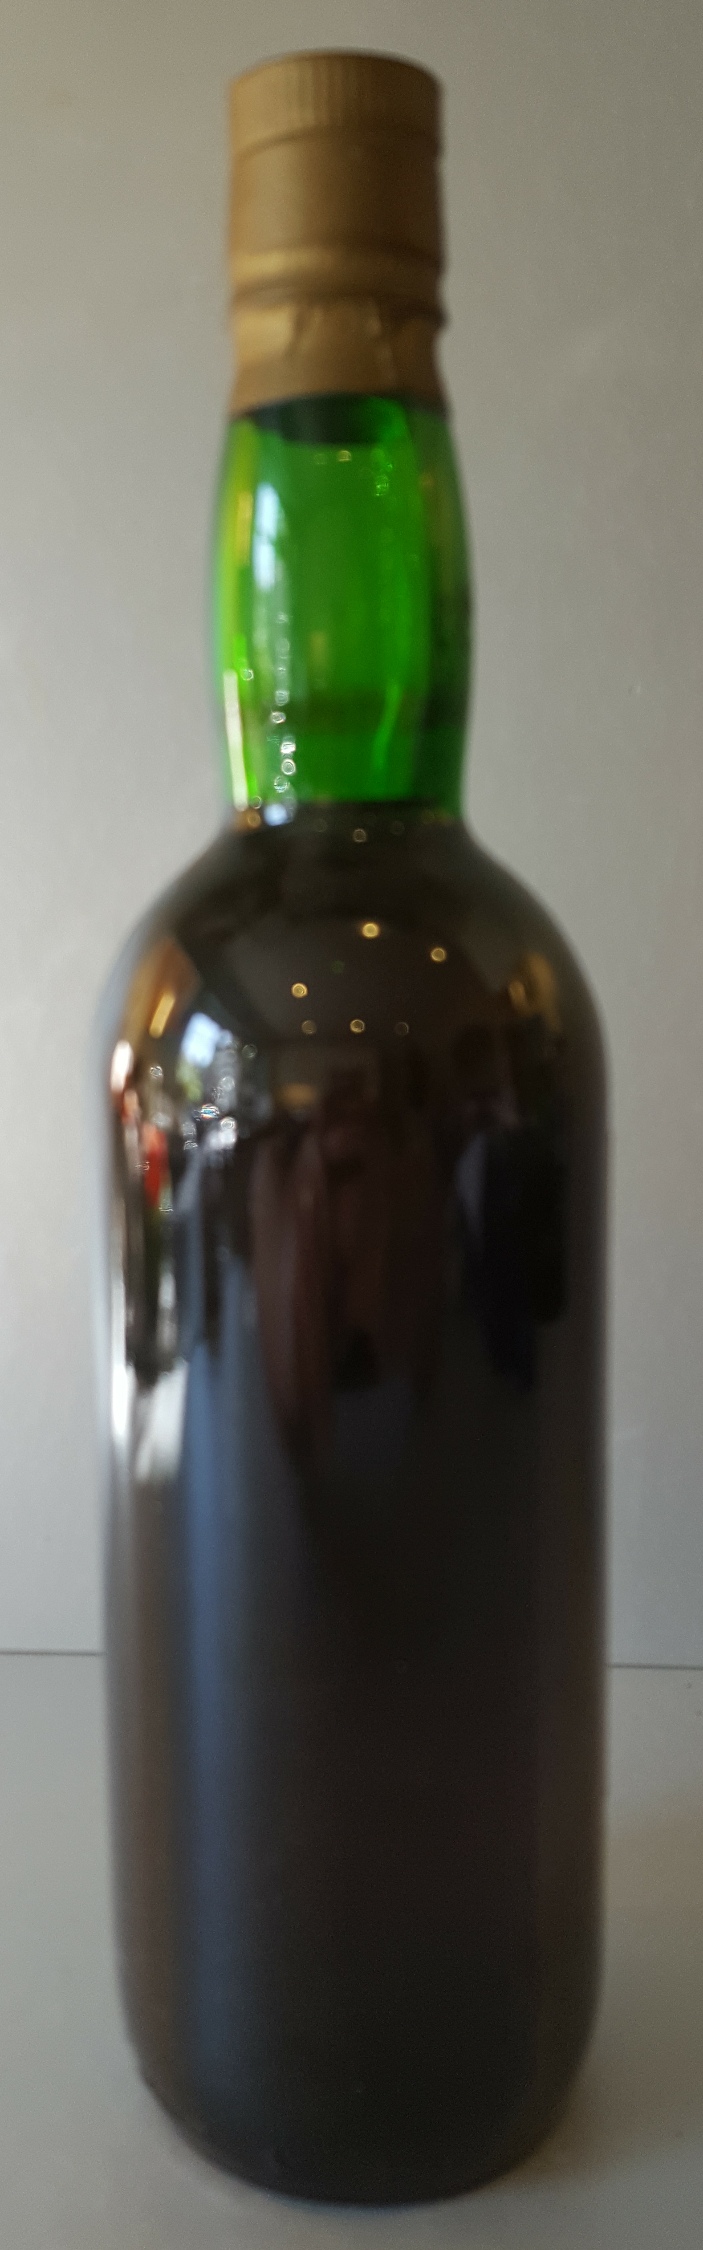 1 x 70cl Bottle Vintage Peers Reserve Finest Old Vintage Character Port - Image 4 of 4